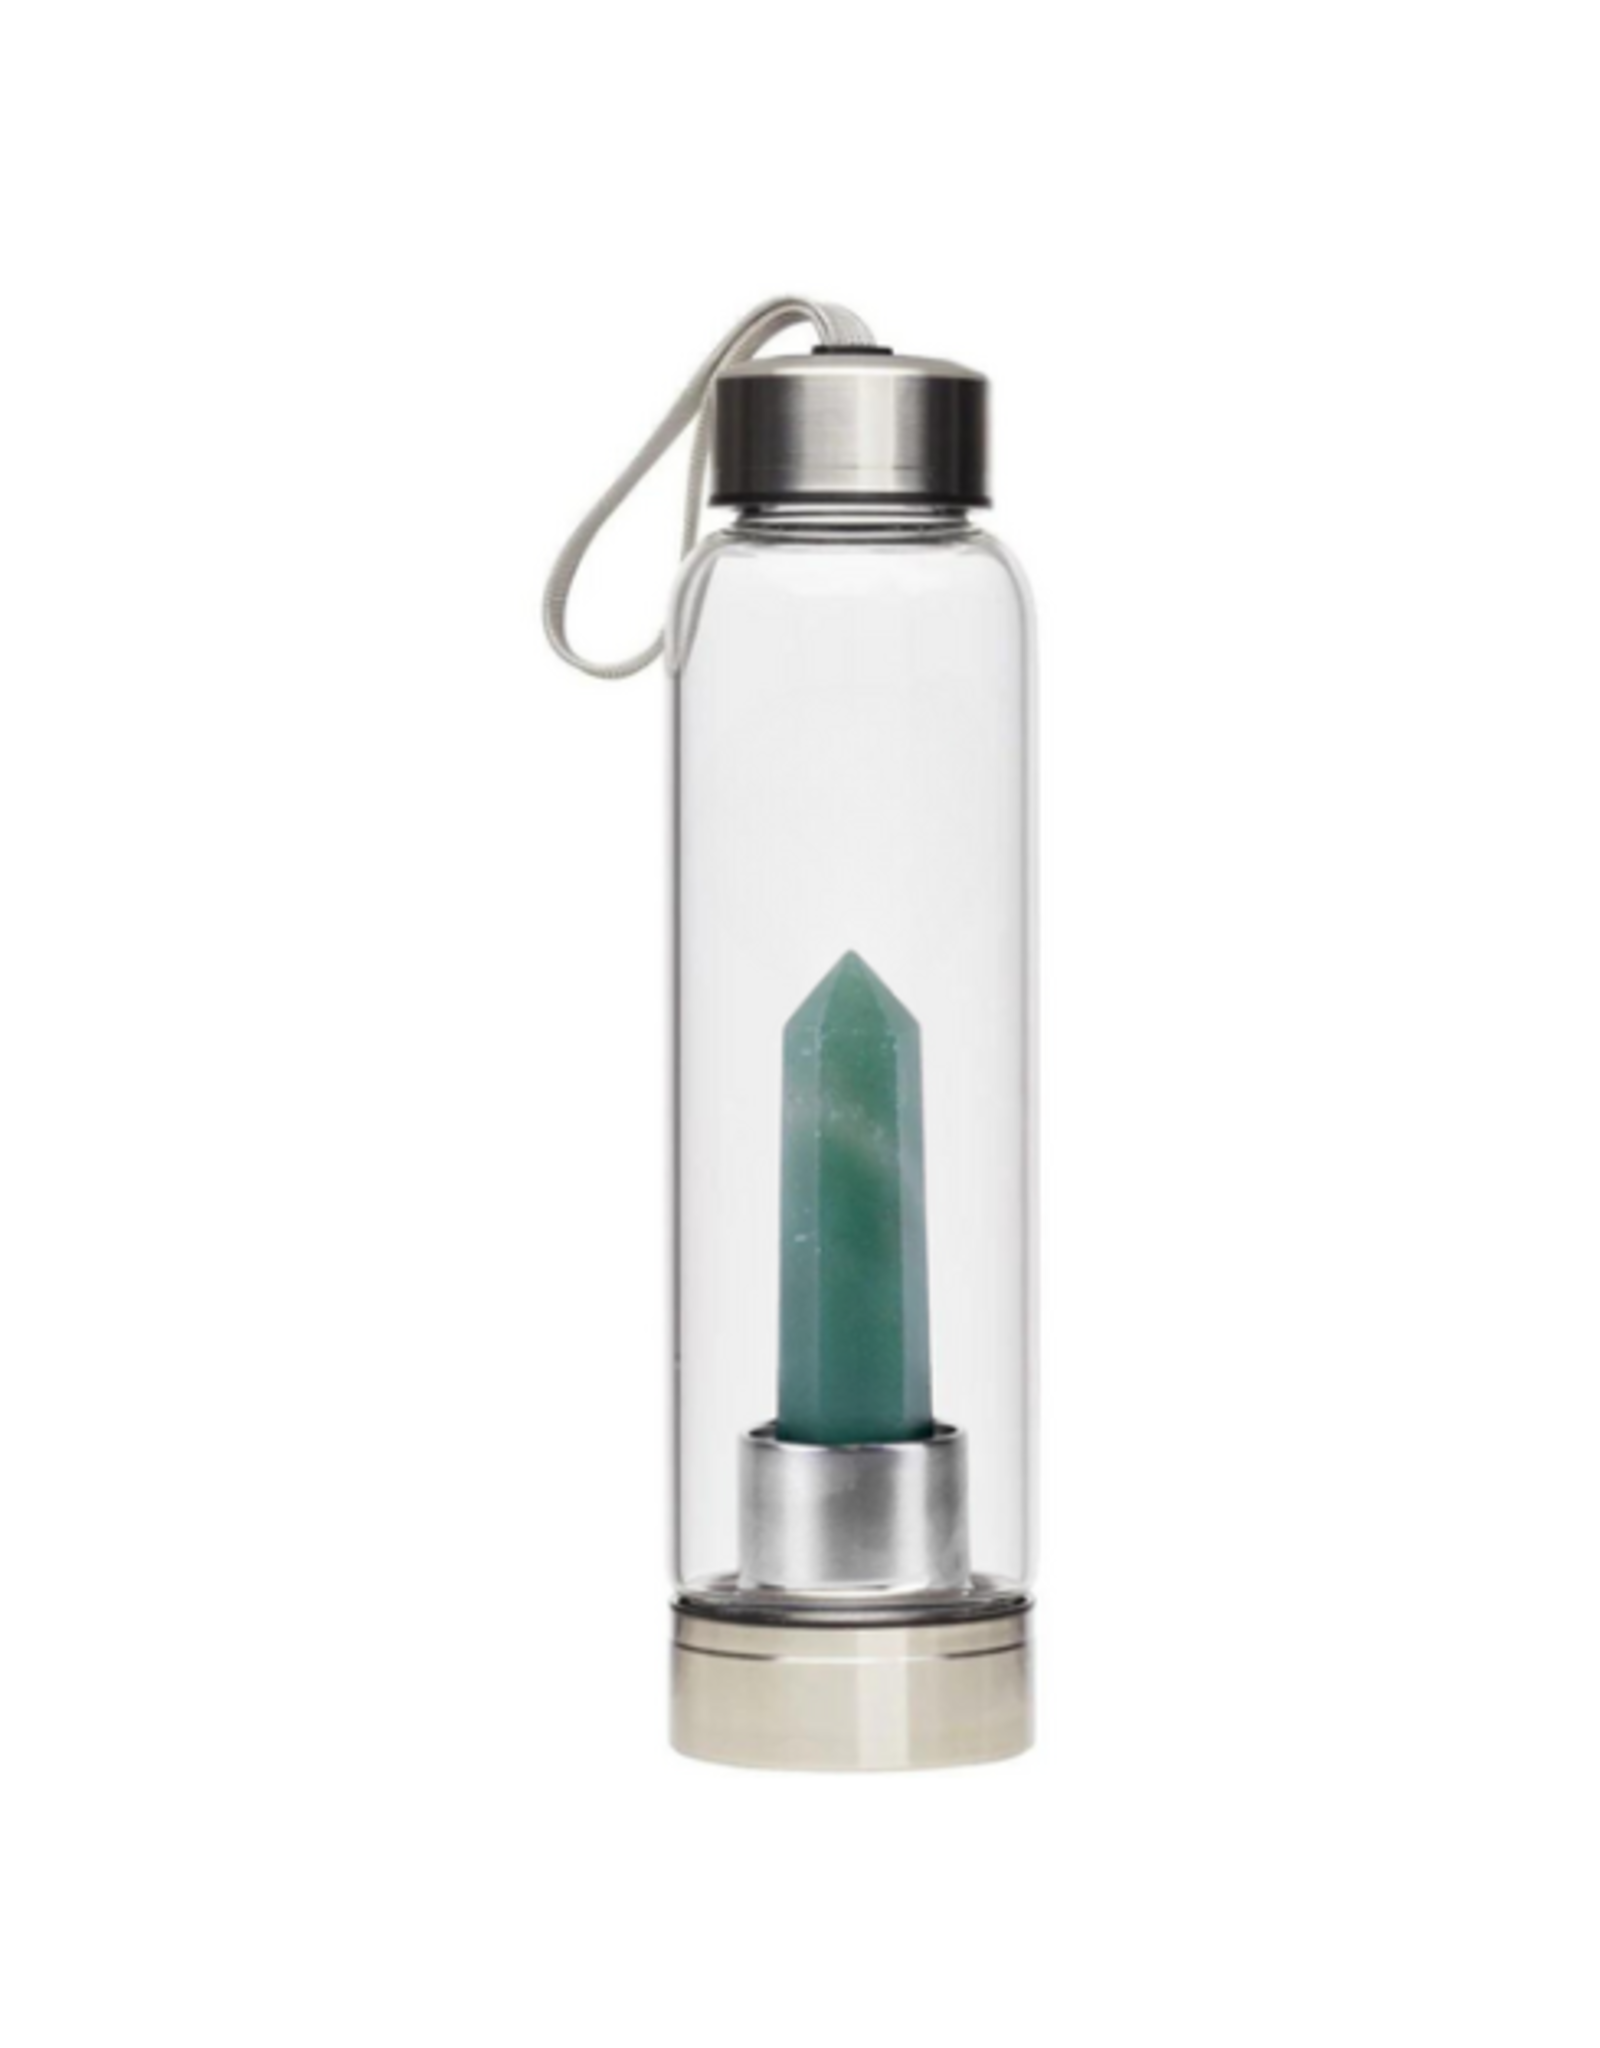 Silverstone Crystal Glass Water Bottle